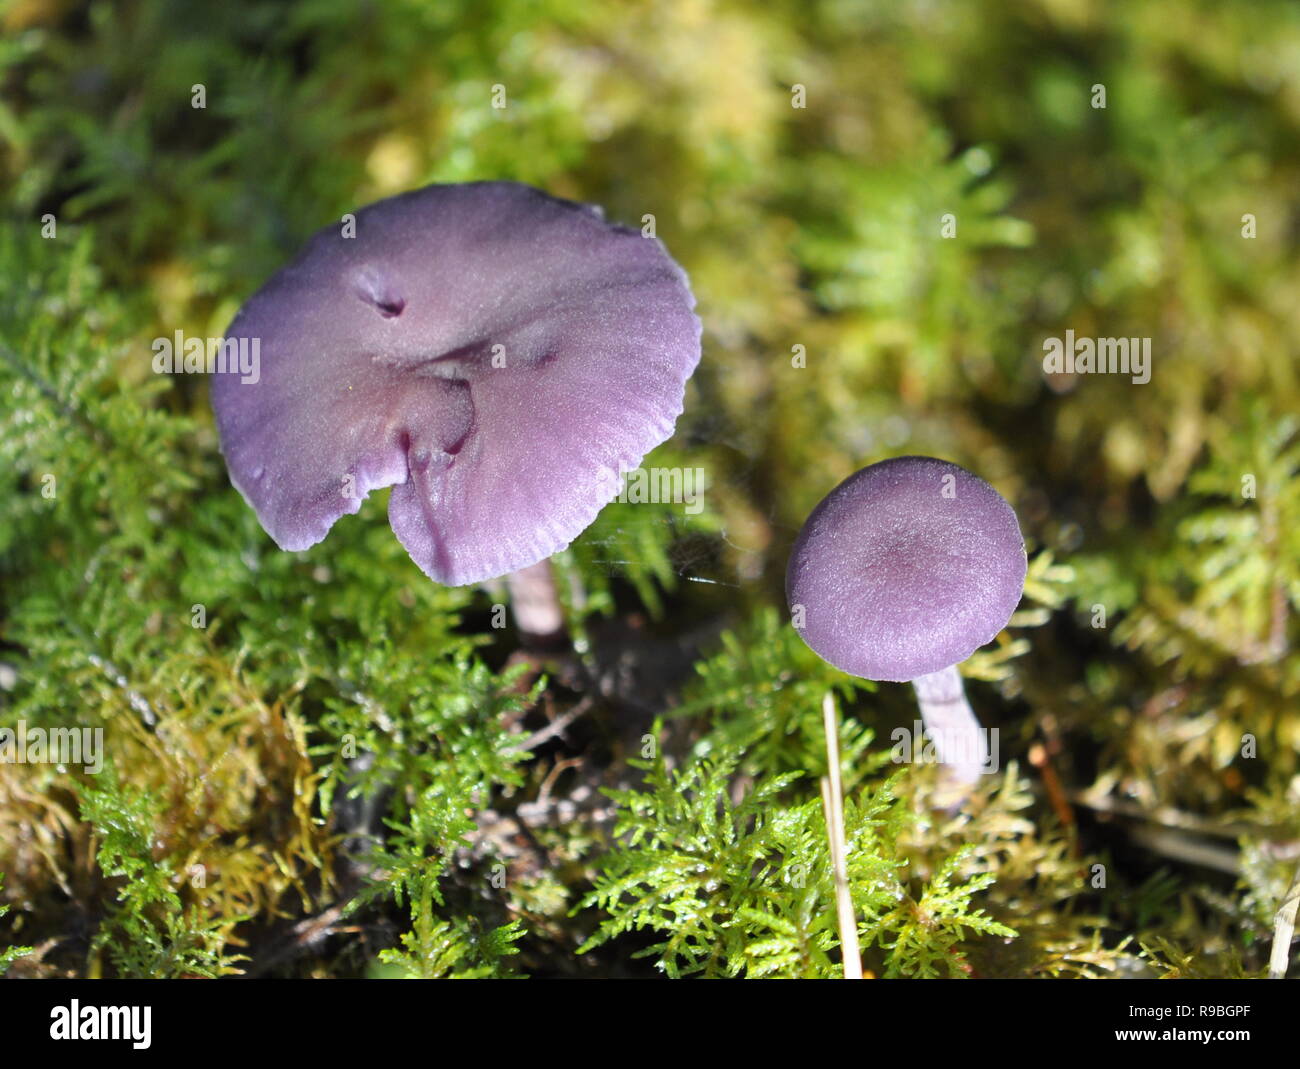 Le séducteur améthyste Laccaria amethystina champignons dans son environnement naturel Banque D'Images